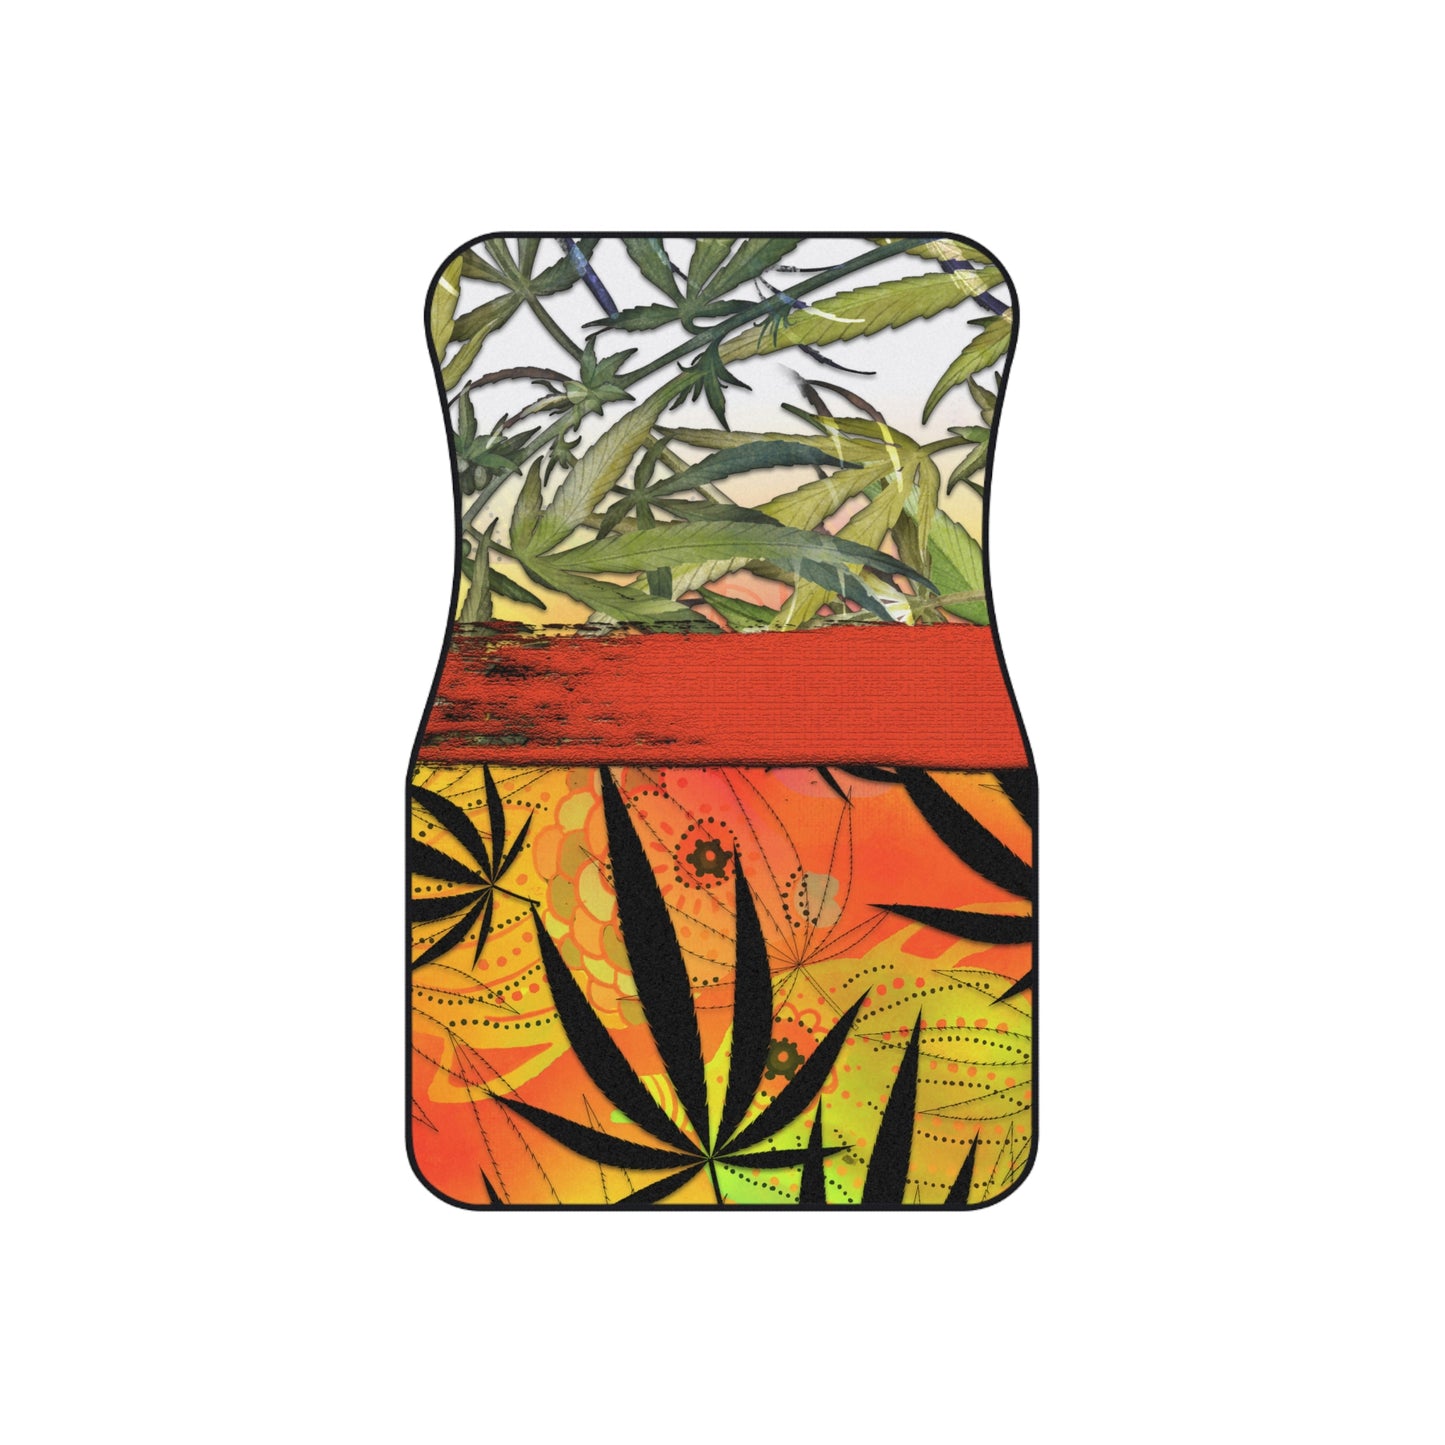 Beautiful Redish Orange Banded Marijuana 420 Pot Weed Leaf Mats (Set of 4)